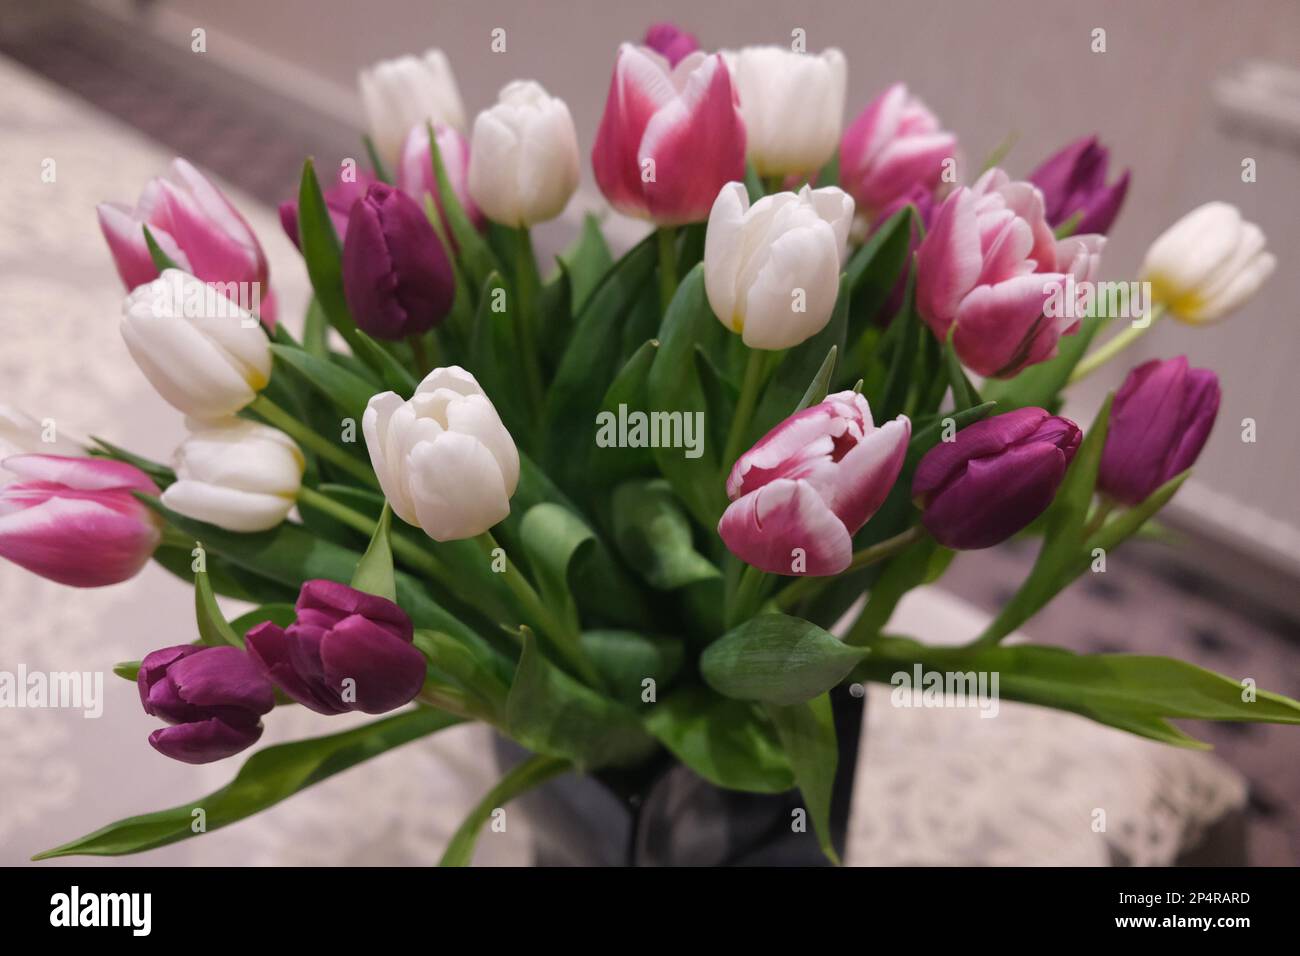 Un exemple rare et épique d'un beau et symétriquement arrangé bouquet de stunnngly élégant tulipes pourpre et blanc assis dans un vase Banque D'Images